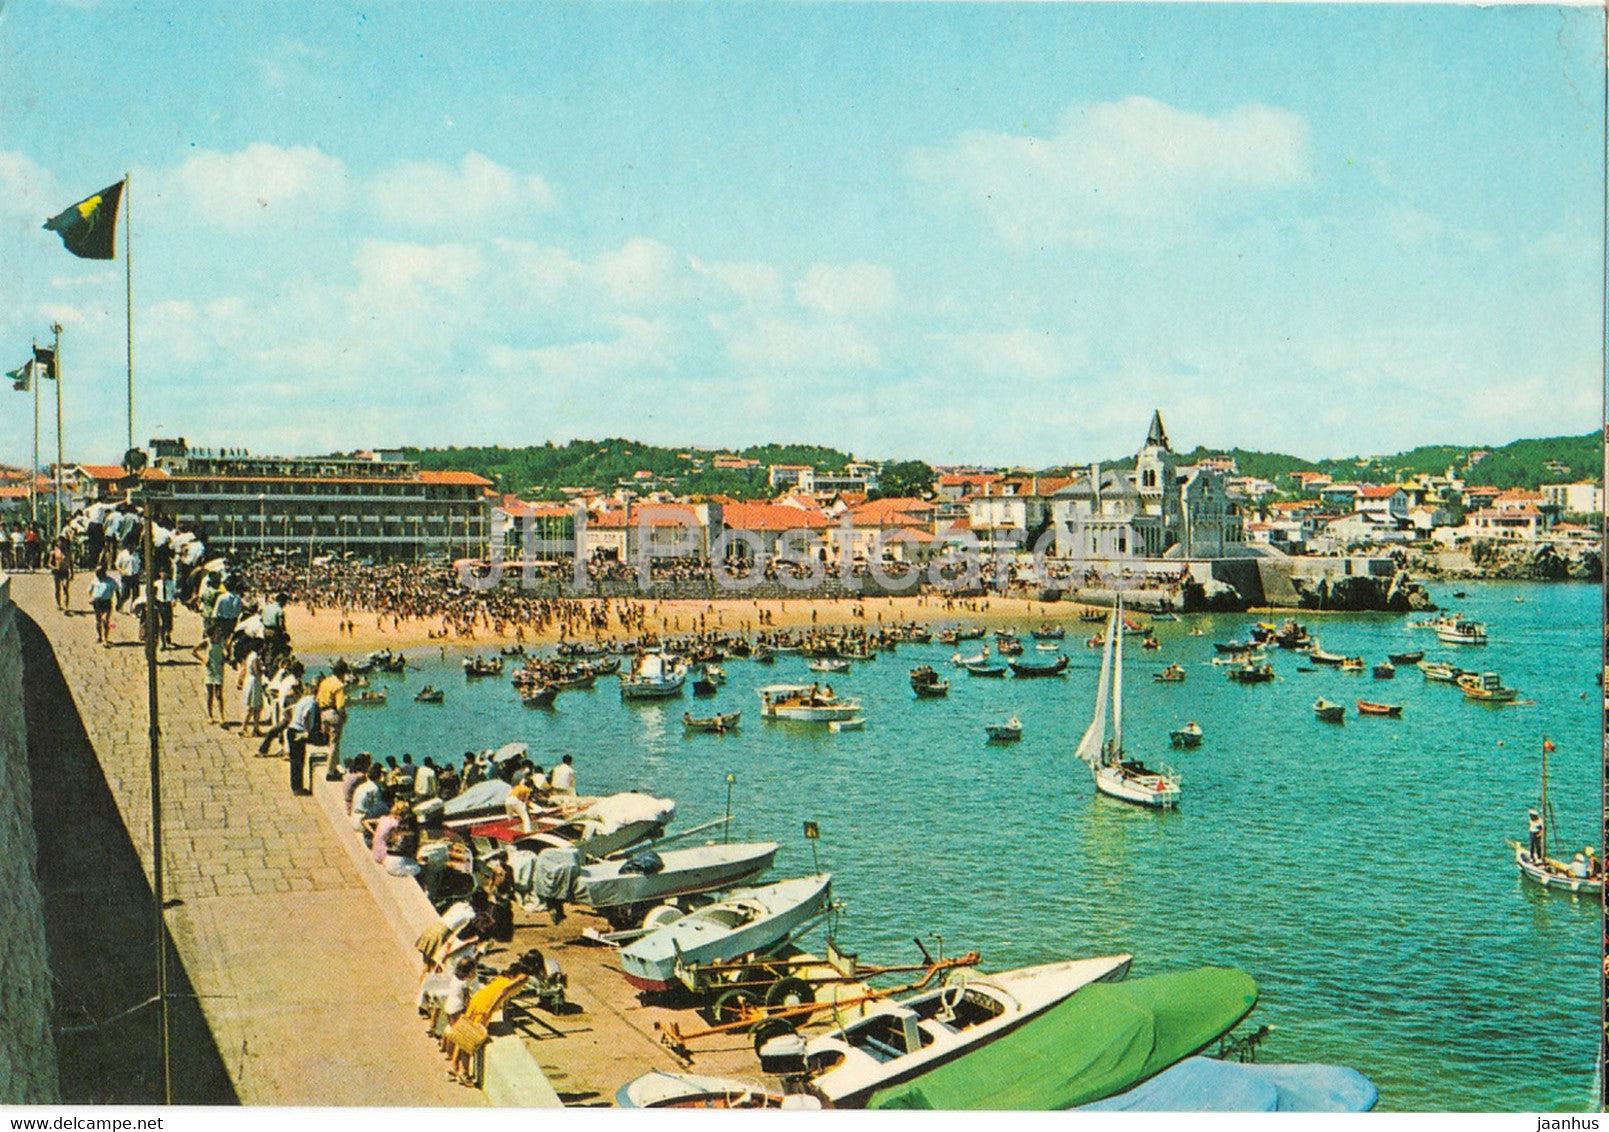 Cascais - Aspecto da Praia - Aspect of the Beach - boat - 627 - Portugal - unused - JH Postcards